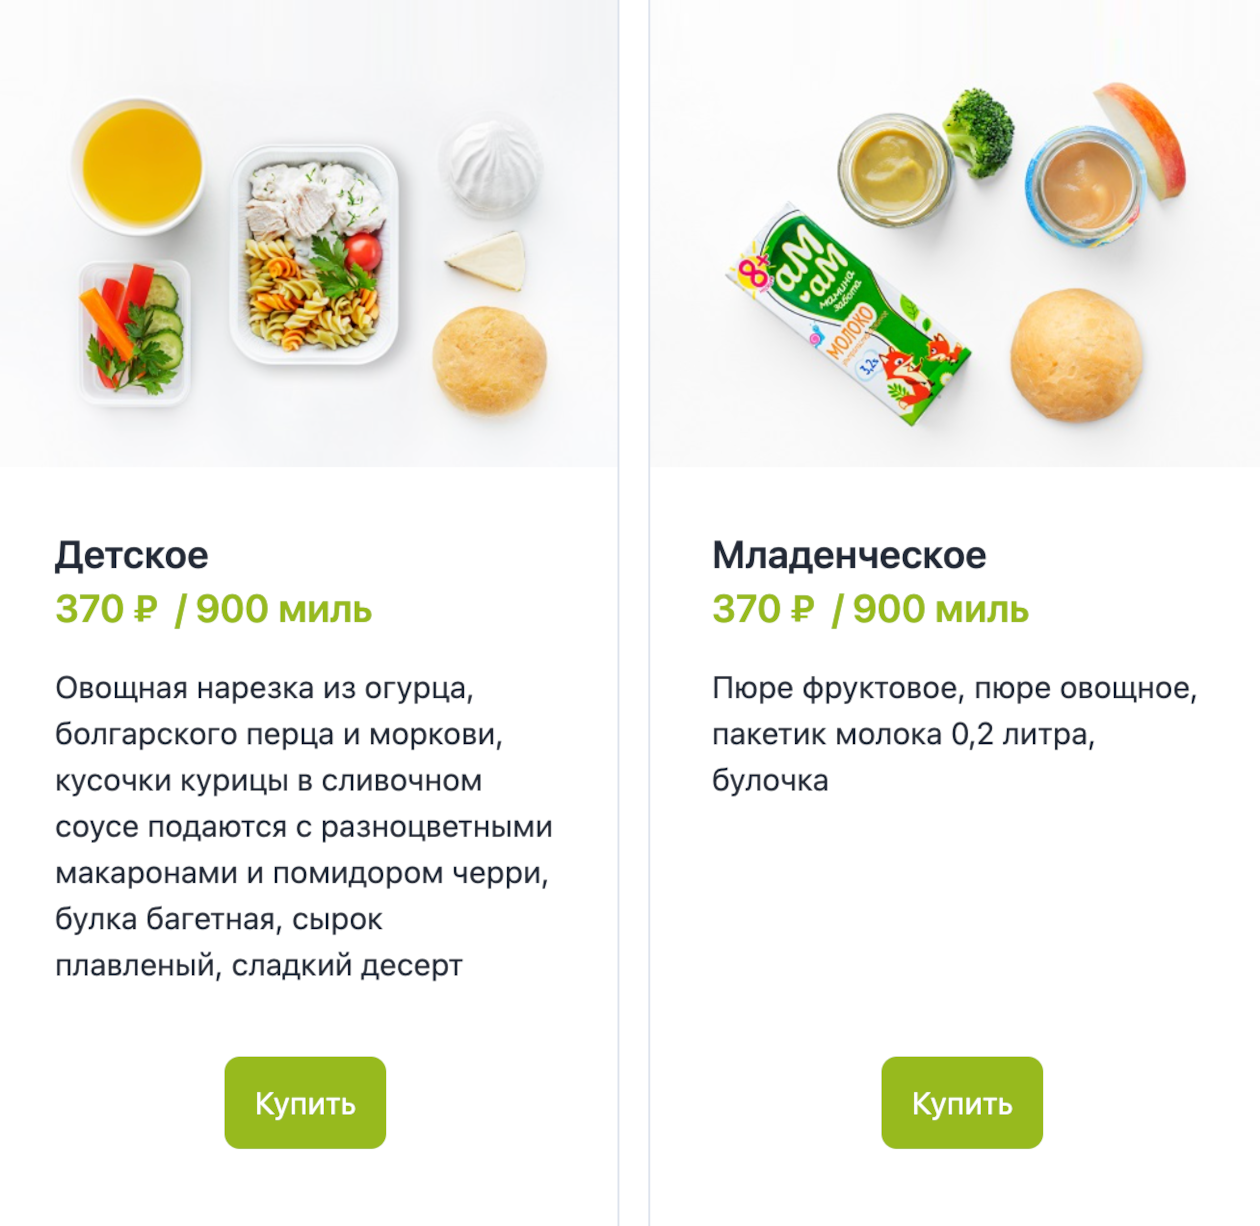 Так выглядит детское и младенческое питание на борту S7. Источник: s7.ru